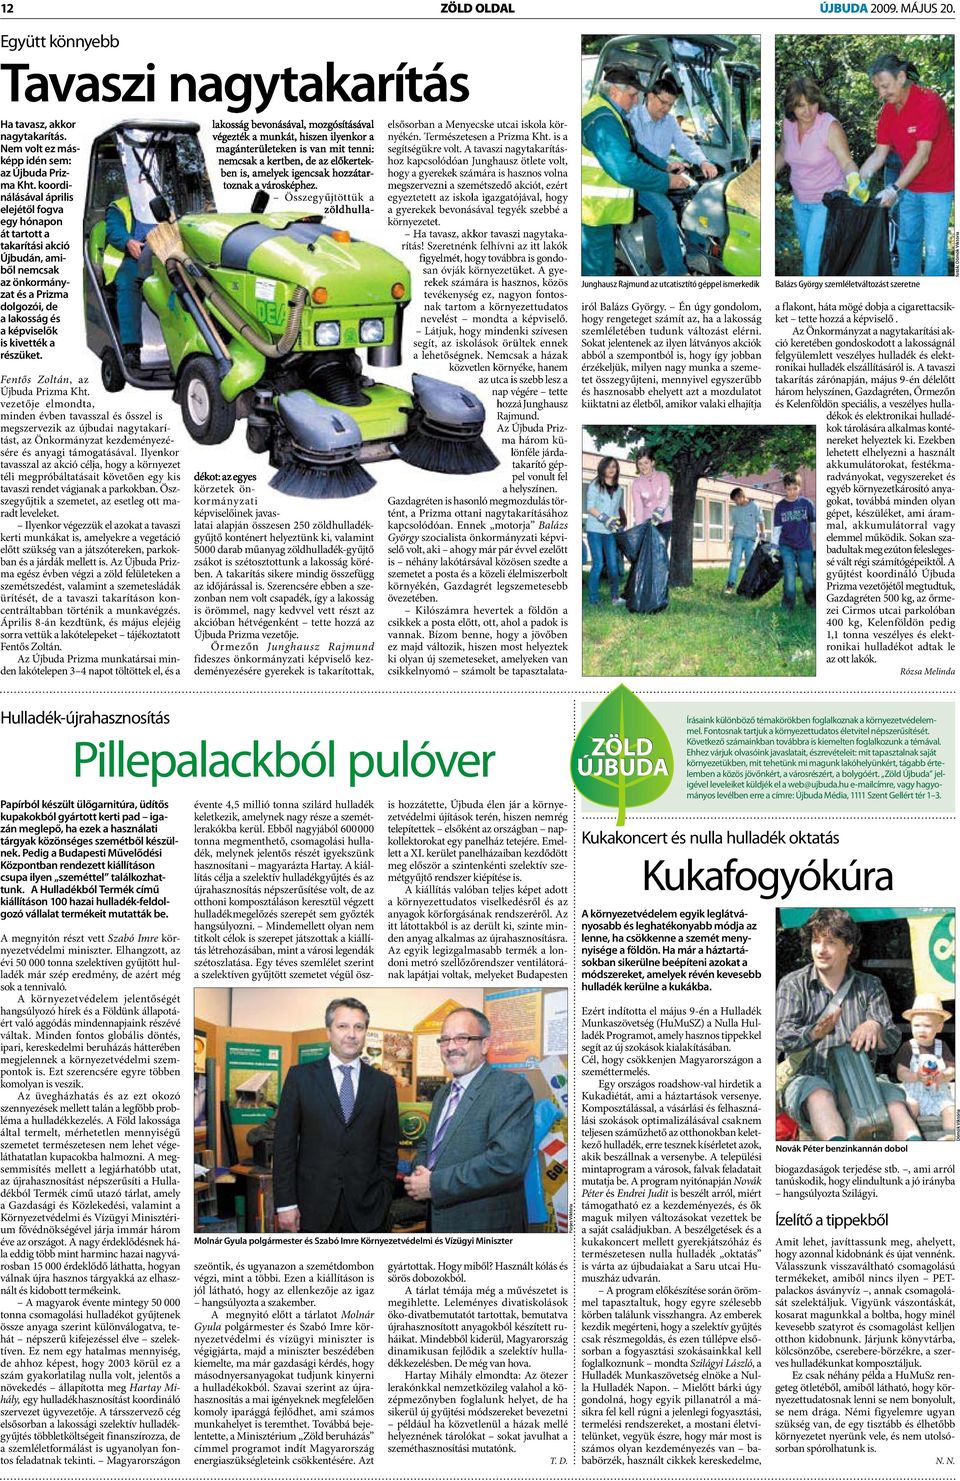 Fentős Zoltán,, az Újbuda Prizma Kht. vezetője elmondta, minden évben tavasszal és ősszel is megszervezik az újbudai nagytakarítást, az Önkormányzat kezdeményezésére és anyagi támogatásával.